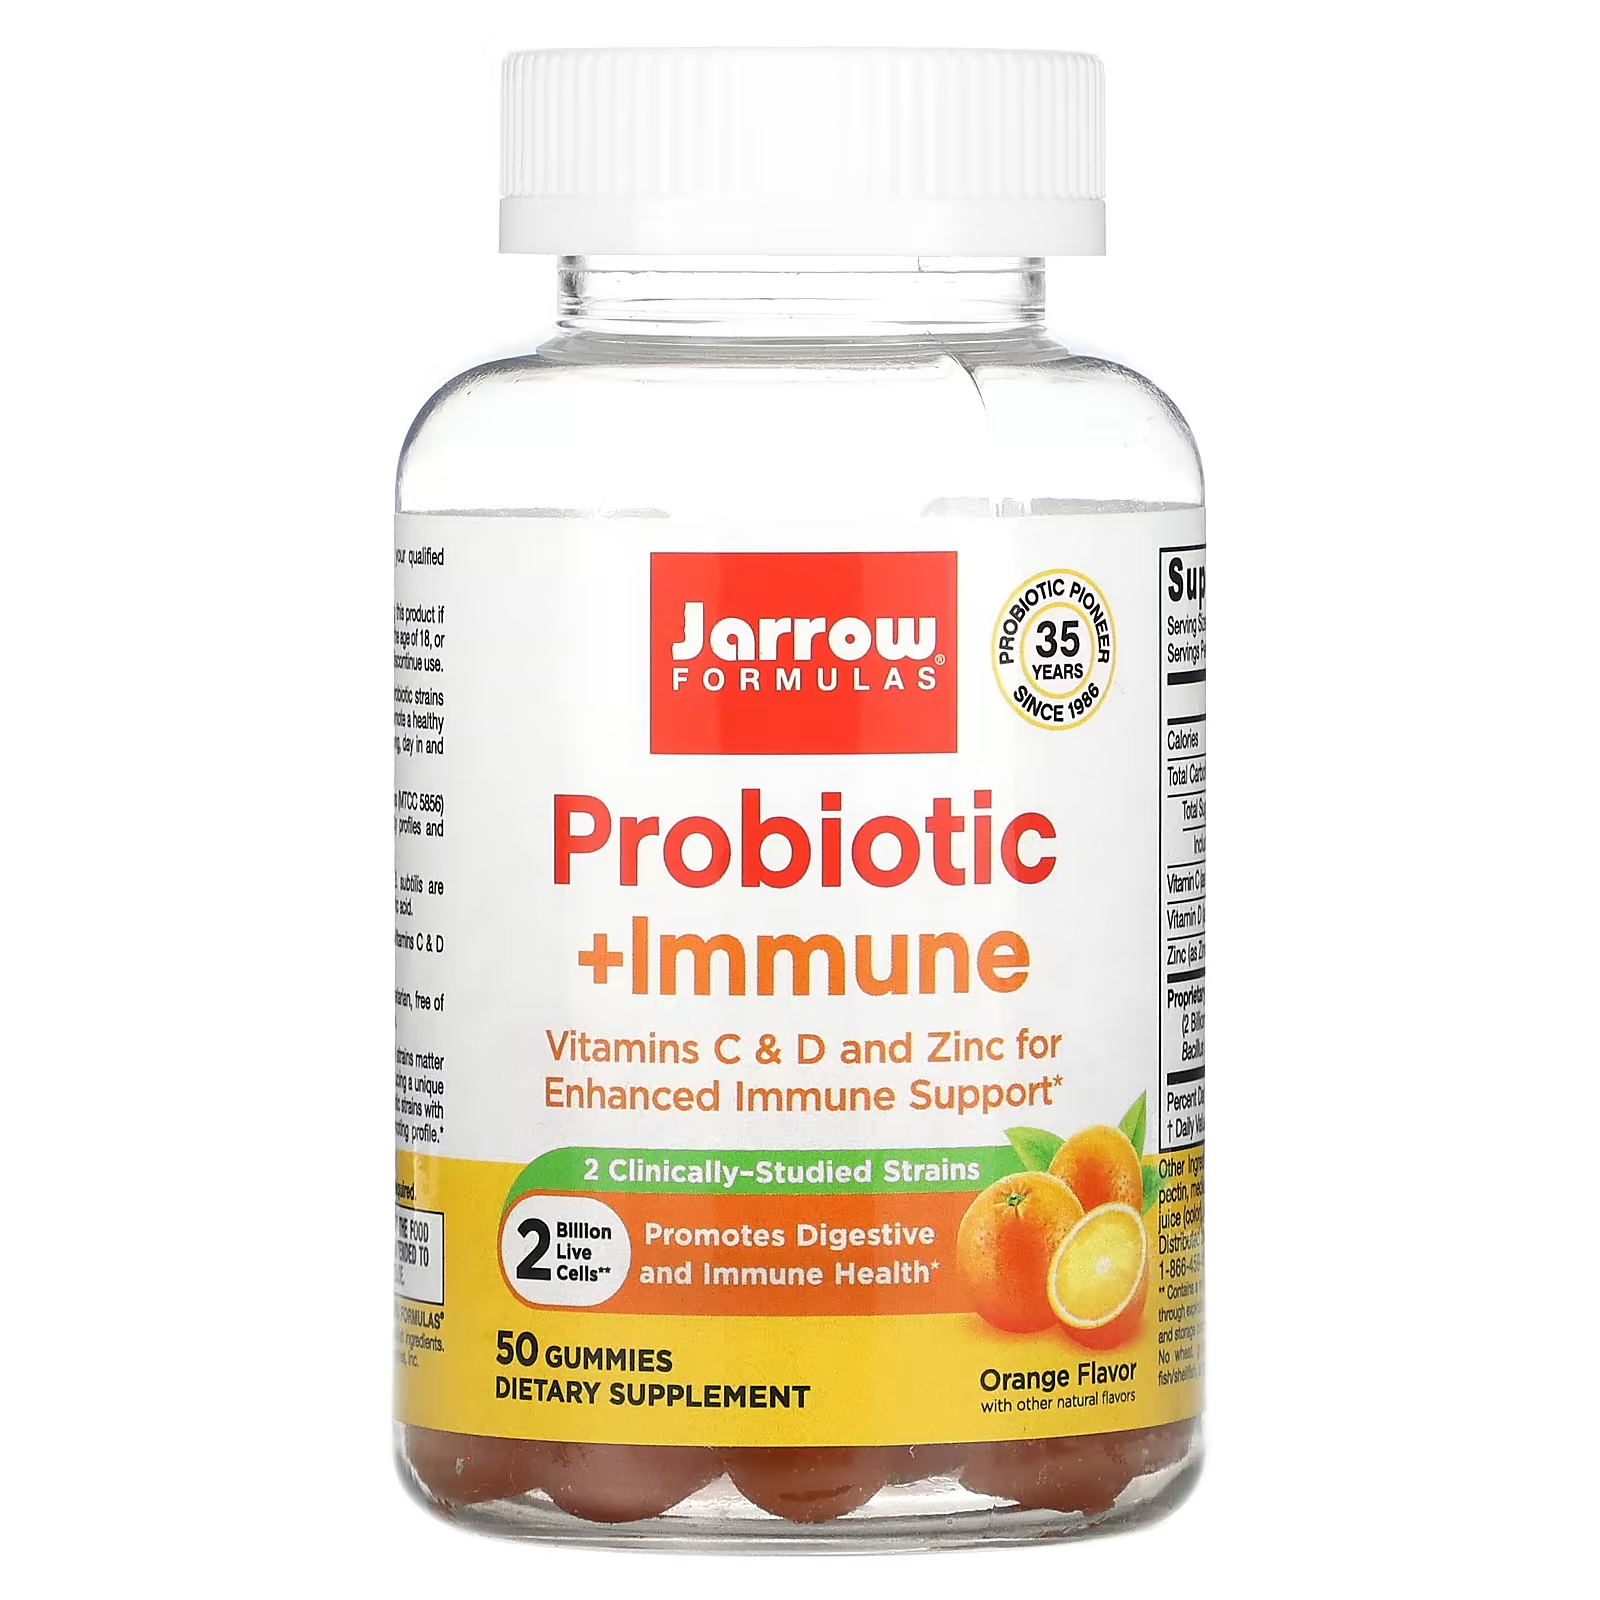 Пищевая добавка Jarrow Formulas Пробиотик + иммунитет апельсин, 50 жевательных таблеток jarrow formulas пробиотик и пребиотик ежевика 2 млрд 50 жевательных таблеток